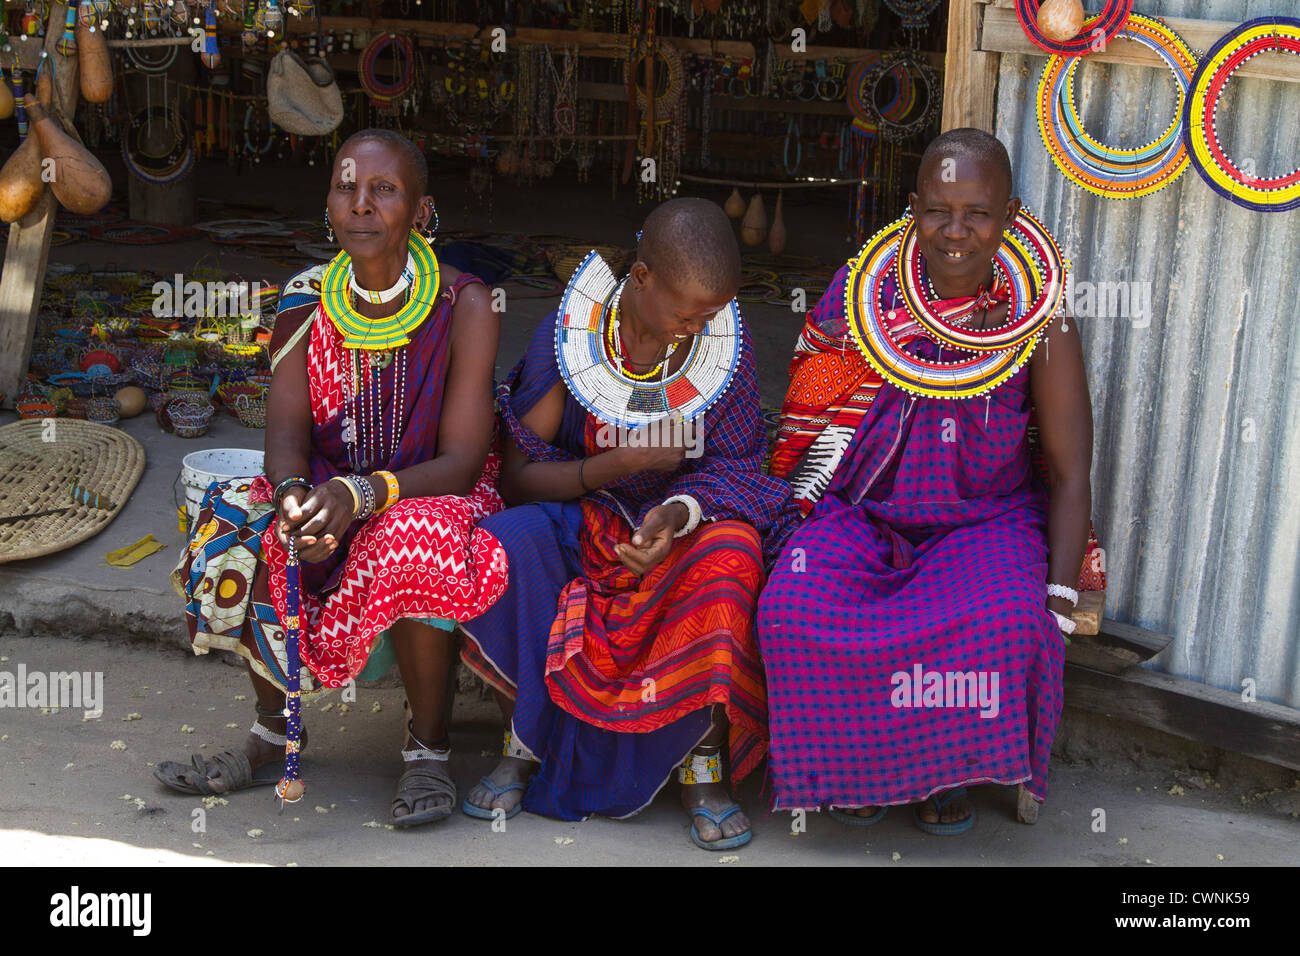 Trois femmes maasai, partie d'une coopérative de femmes, vente d'articles d'artisanat en Tanzanie, Afrique. Banque D'Images